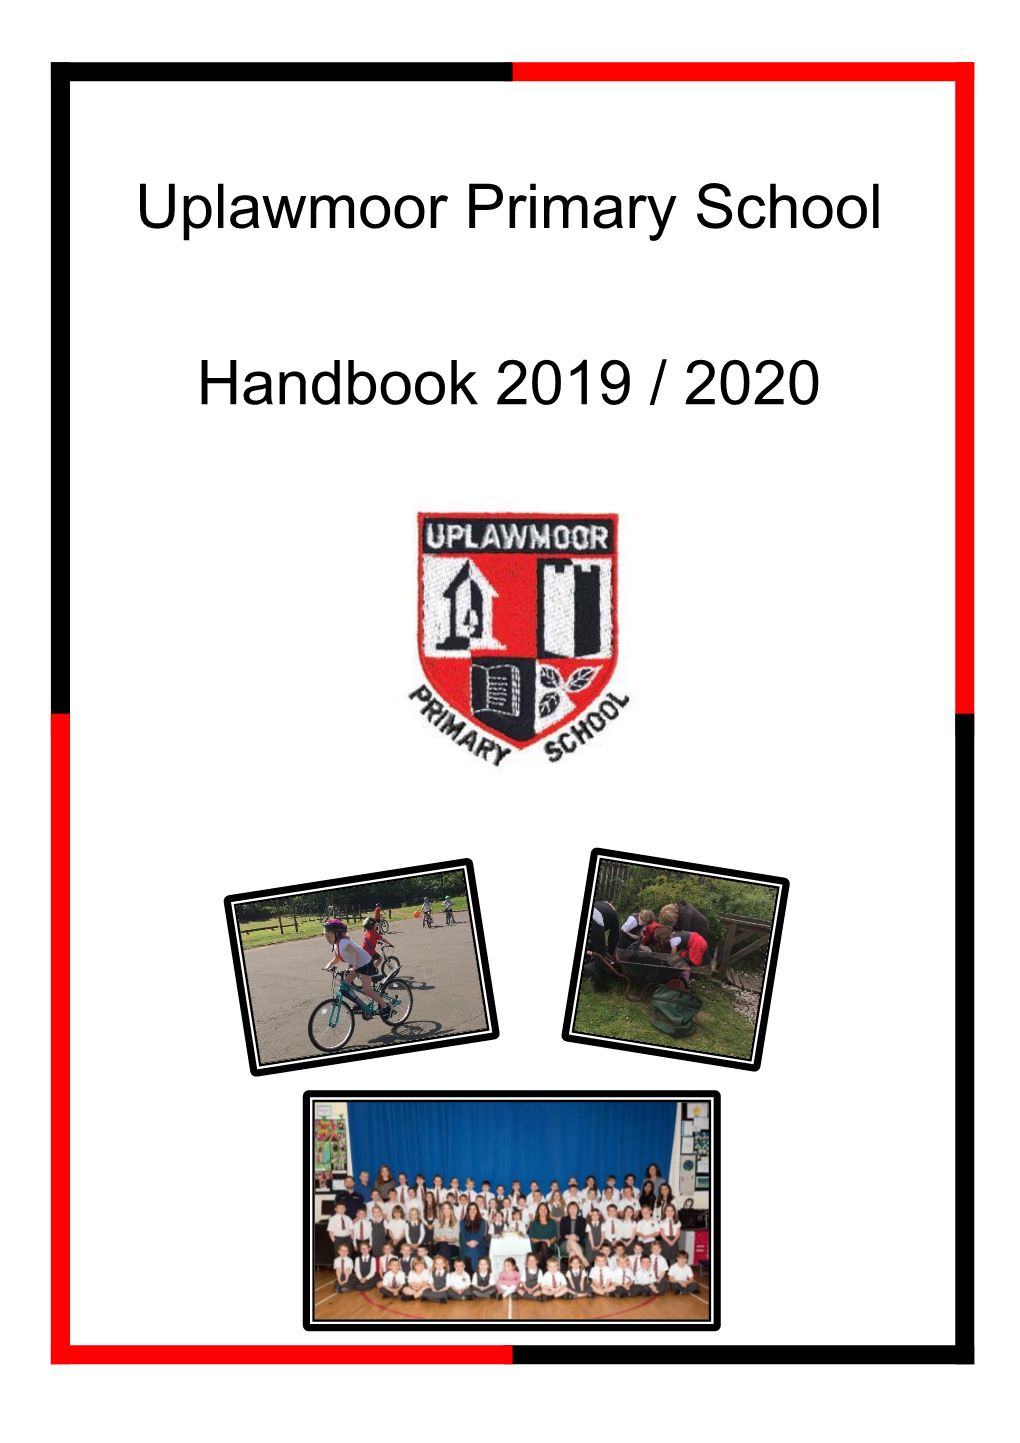 Uplawmoor Primary School Handbook 2019 / 2020